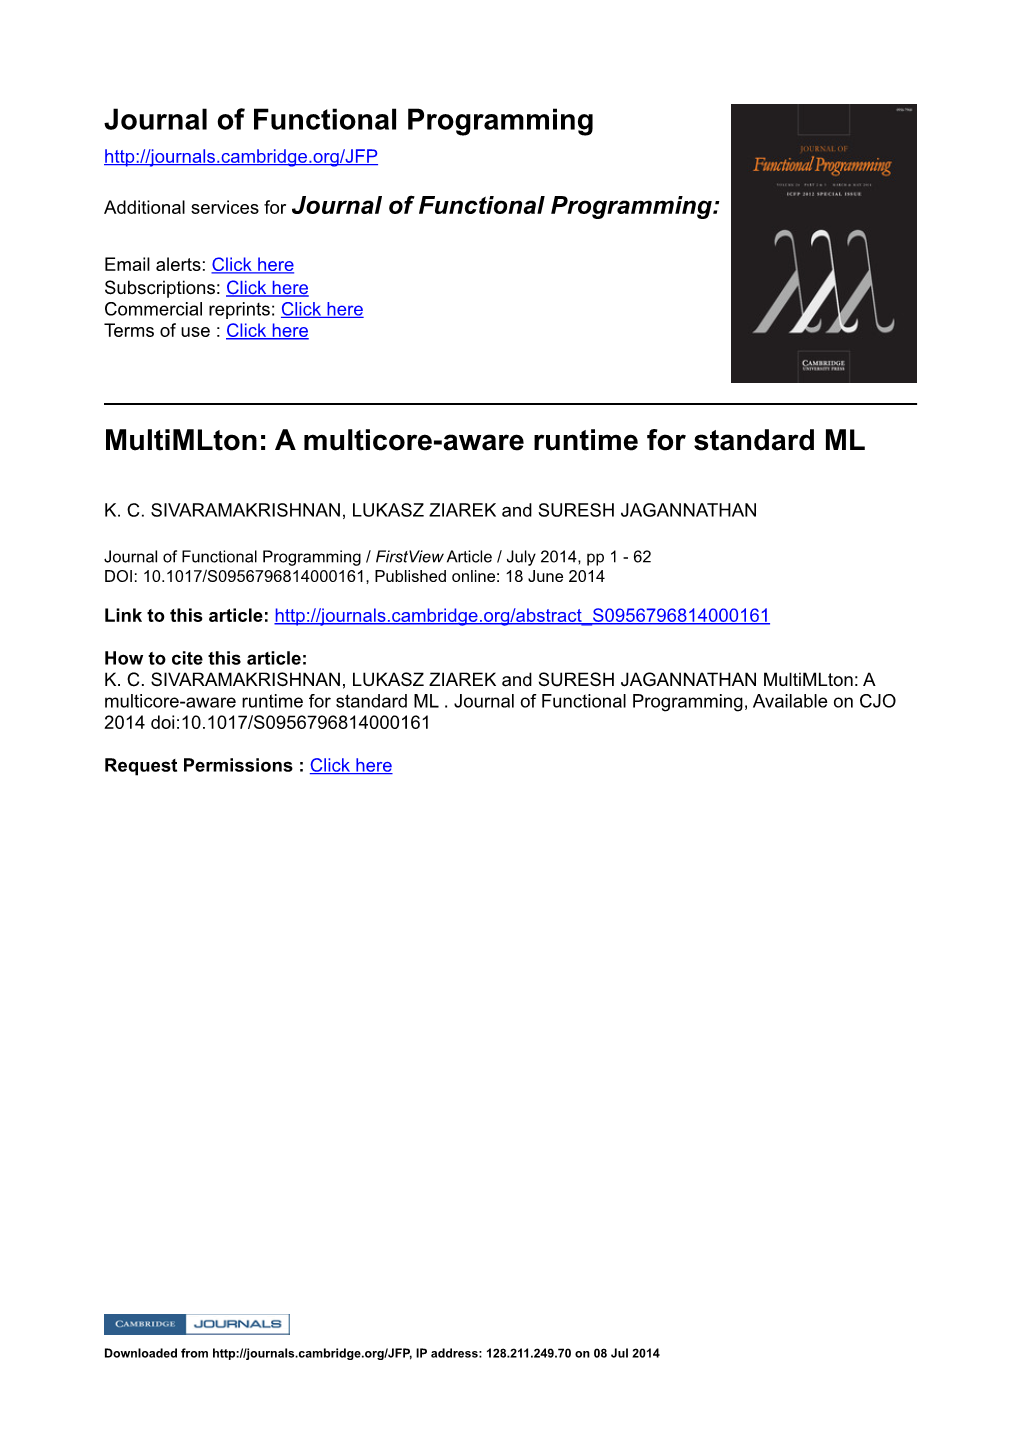 Multimlton: a Multicore-Aware Runtime for Standard ML